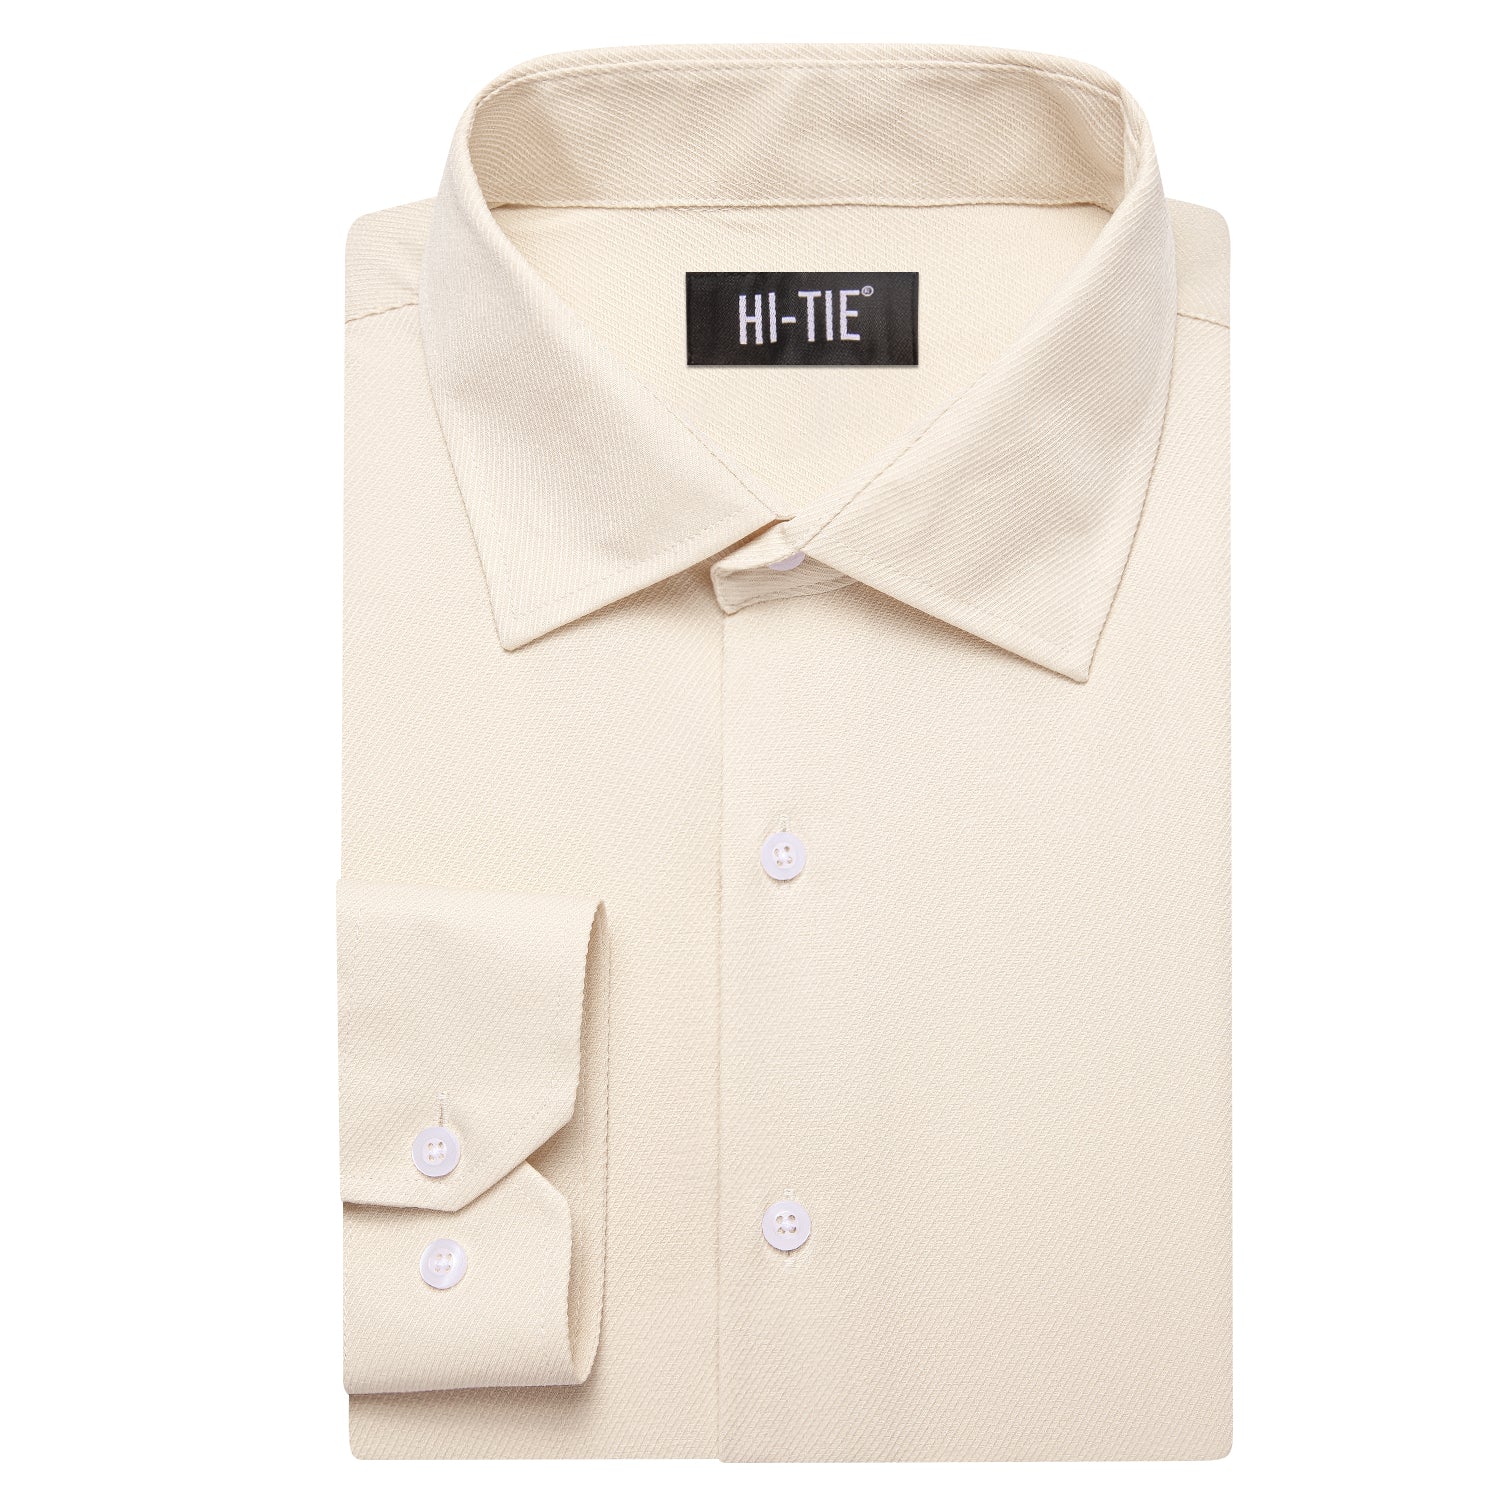 Light Apricot Beige Business Casual Versatile Men's Long Sleeve Dress Shirt